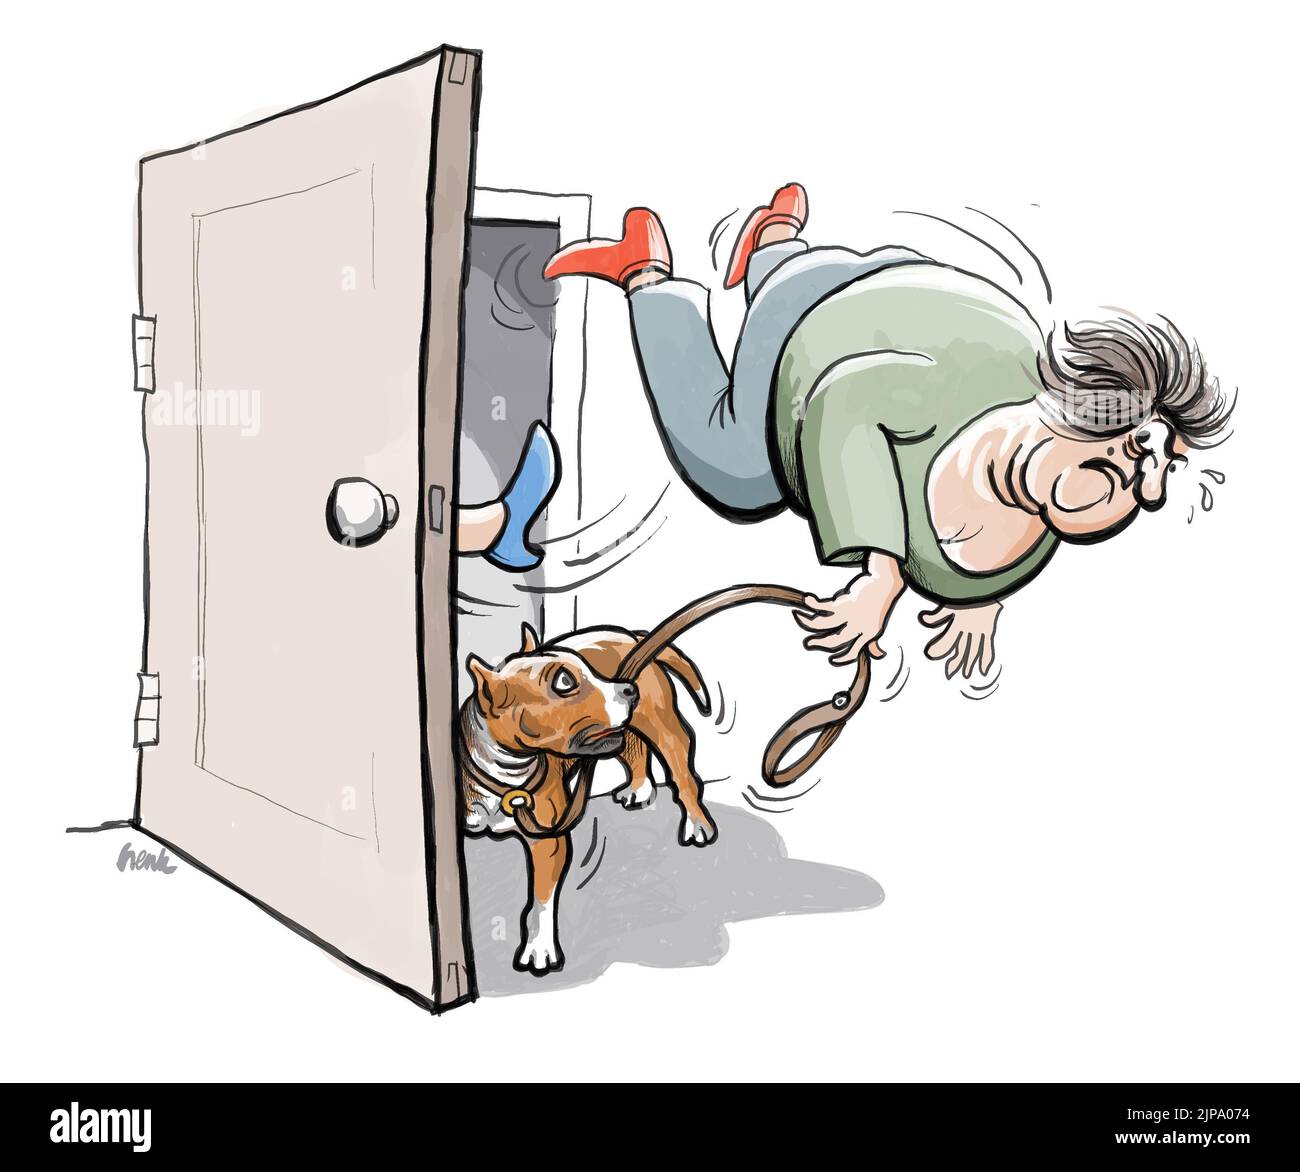 VET lance un propriétaire de chien Staffordshire hors de la porte parce qu'ils arguent sur une méthode de traitement. Au revoir. Caricature vétérinaire Banque D'Images